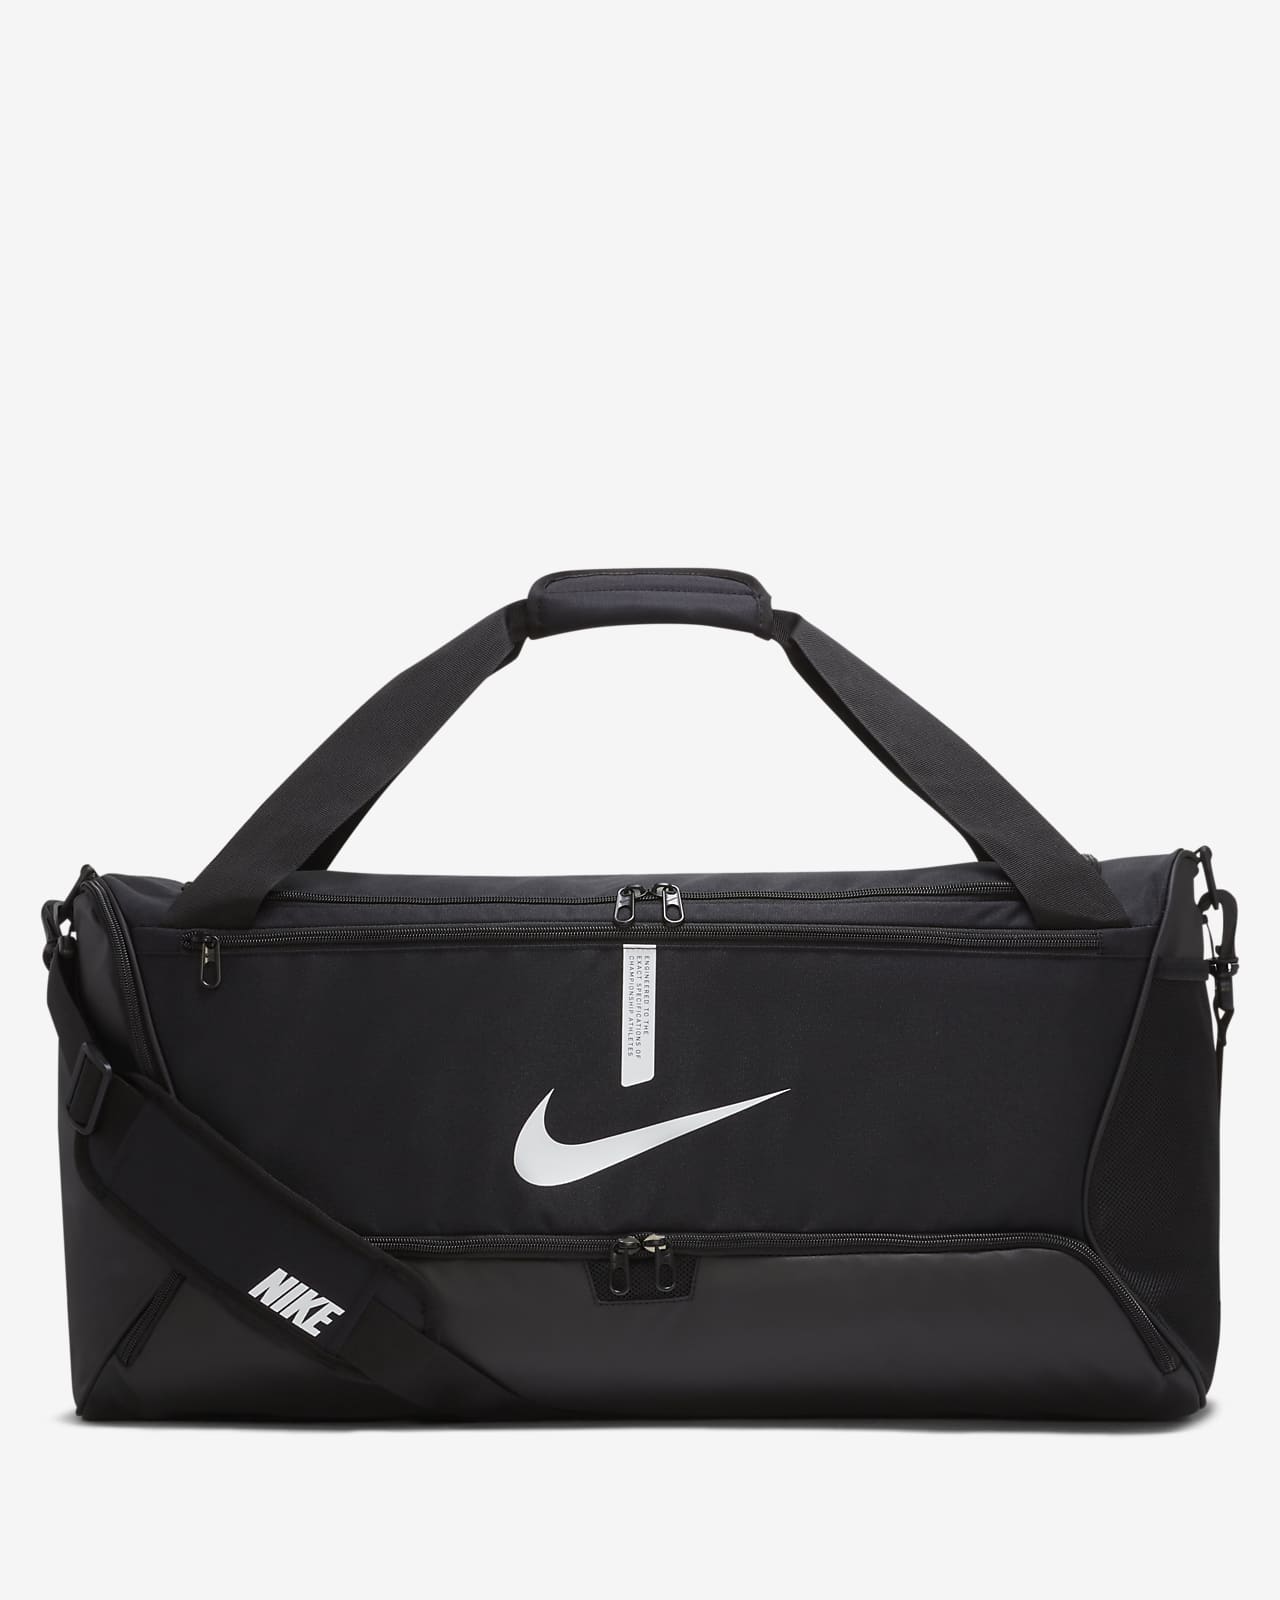 Τσάντα γυμναστηρίου για ποδόσφαιρο Nike Academy Team (μέγεθος Medium, 60 L)